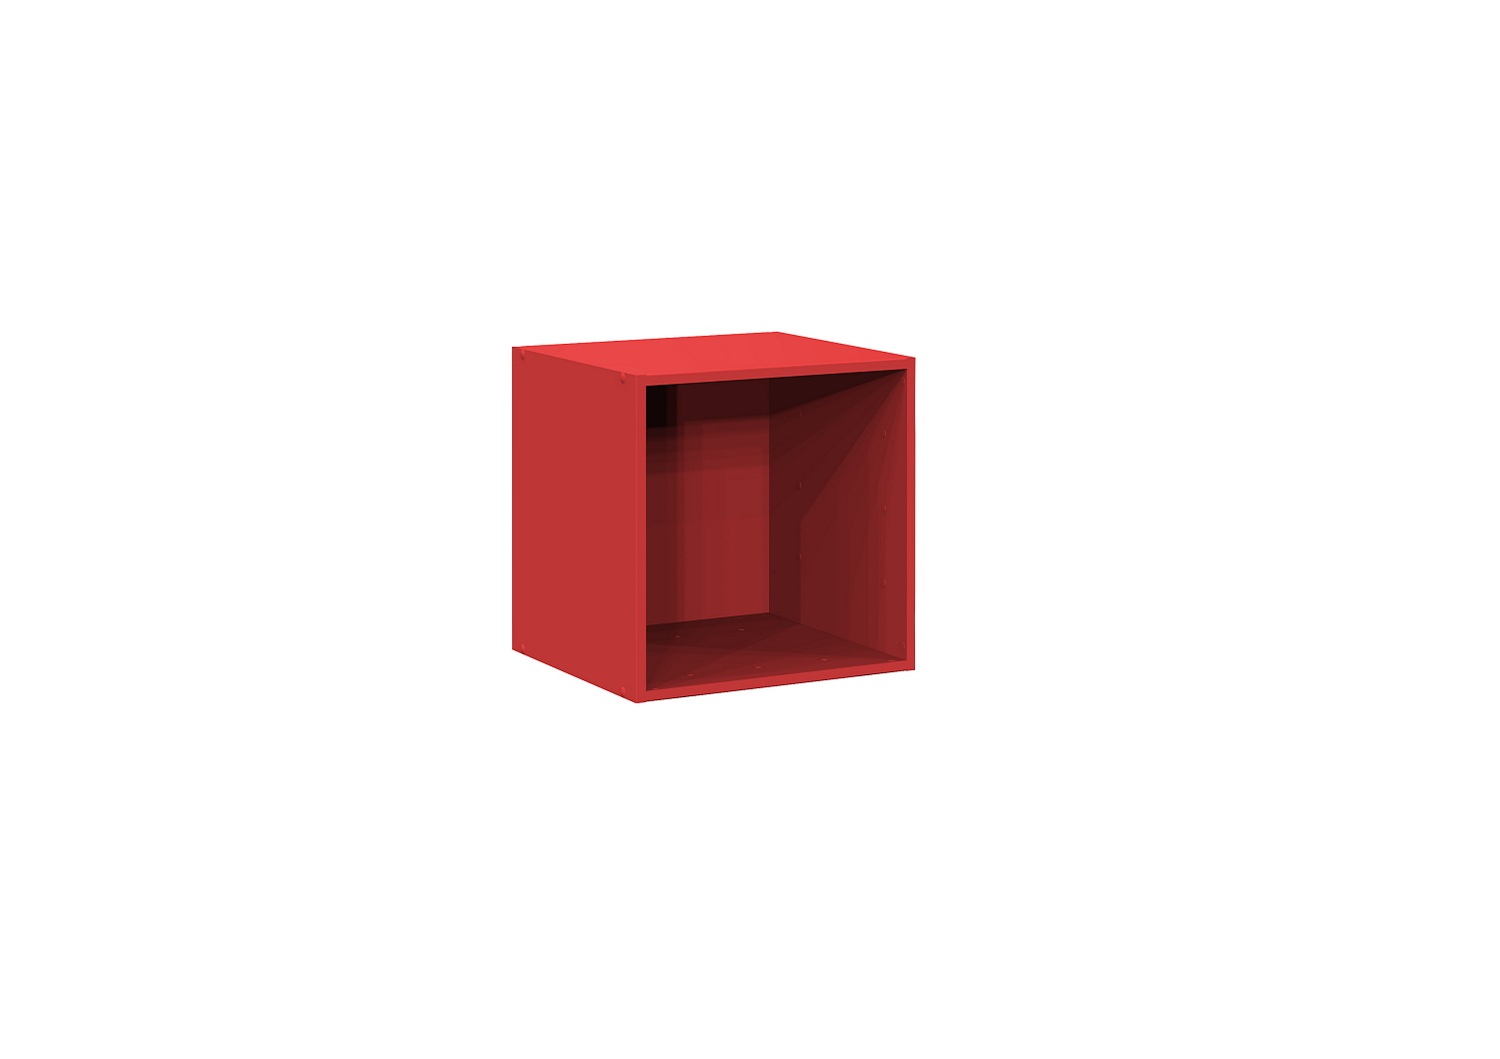 Bilrich Storage Furniture - Multi Kaz 1x1 Cube Red